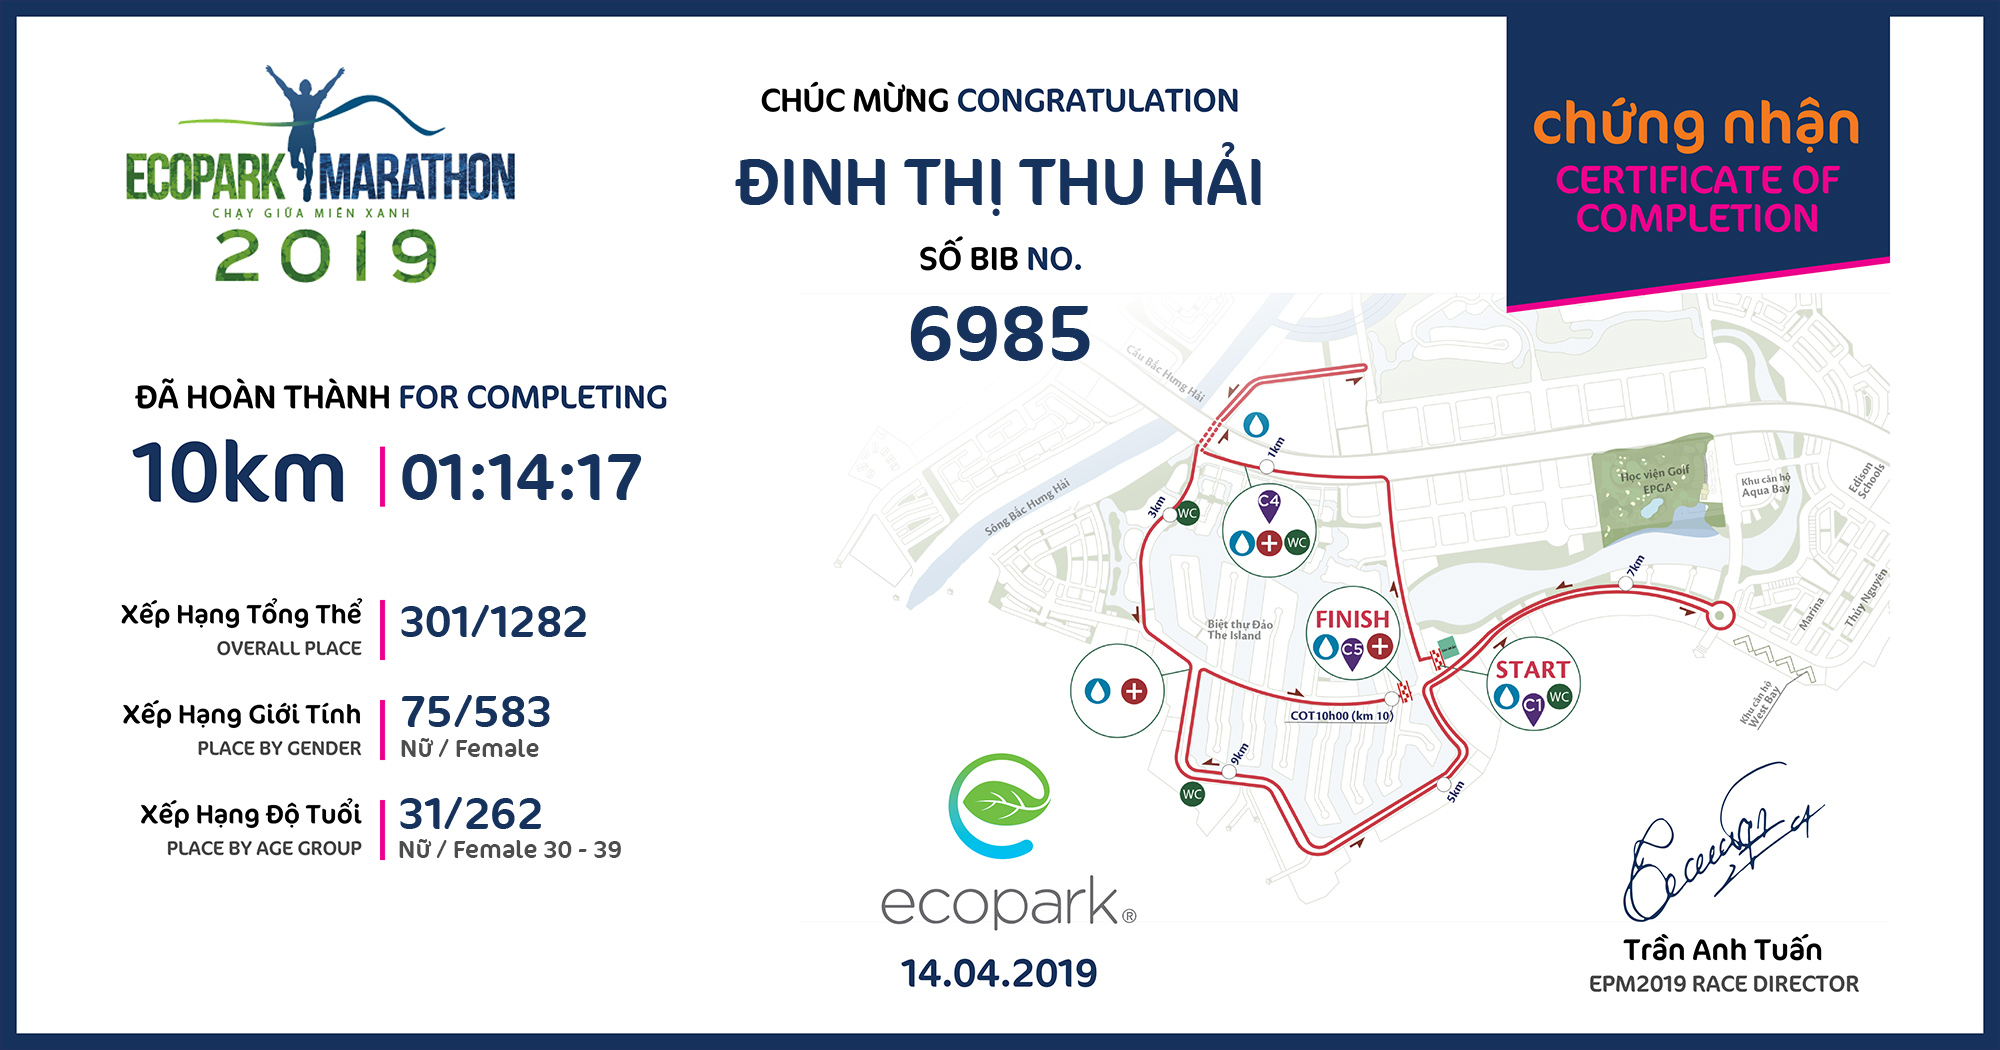 6985 - Đinh Thị Thu Hải